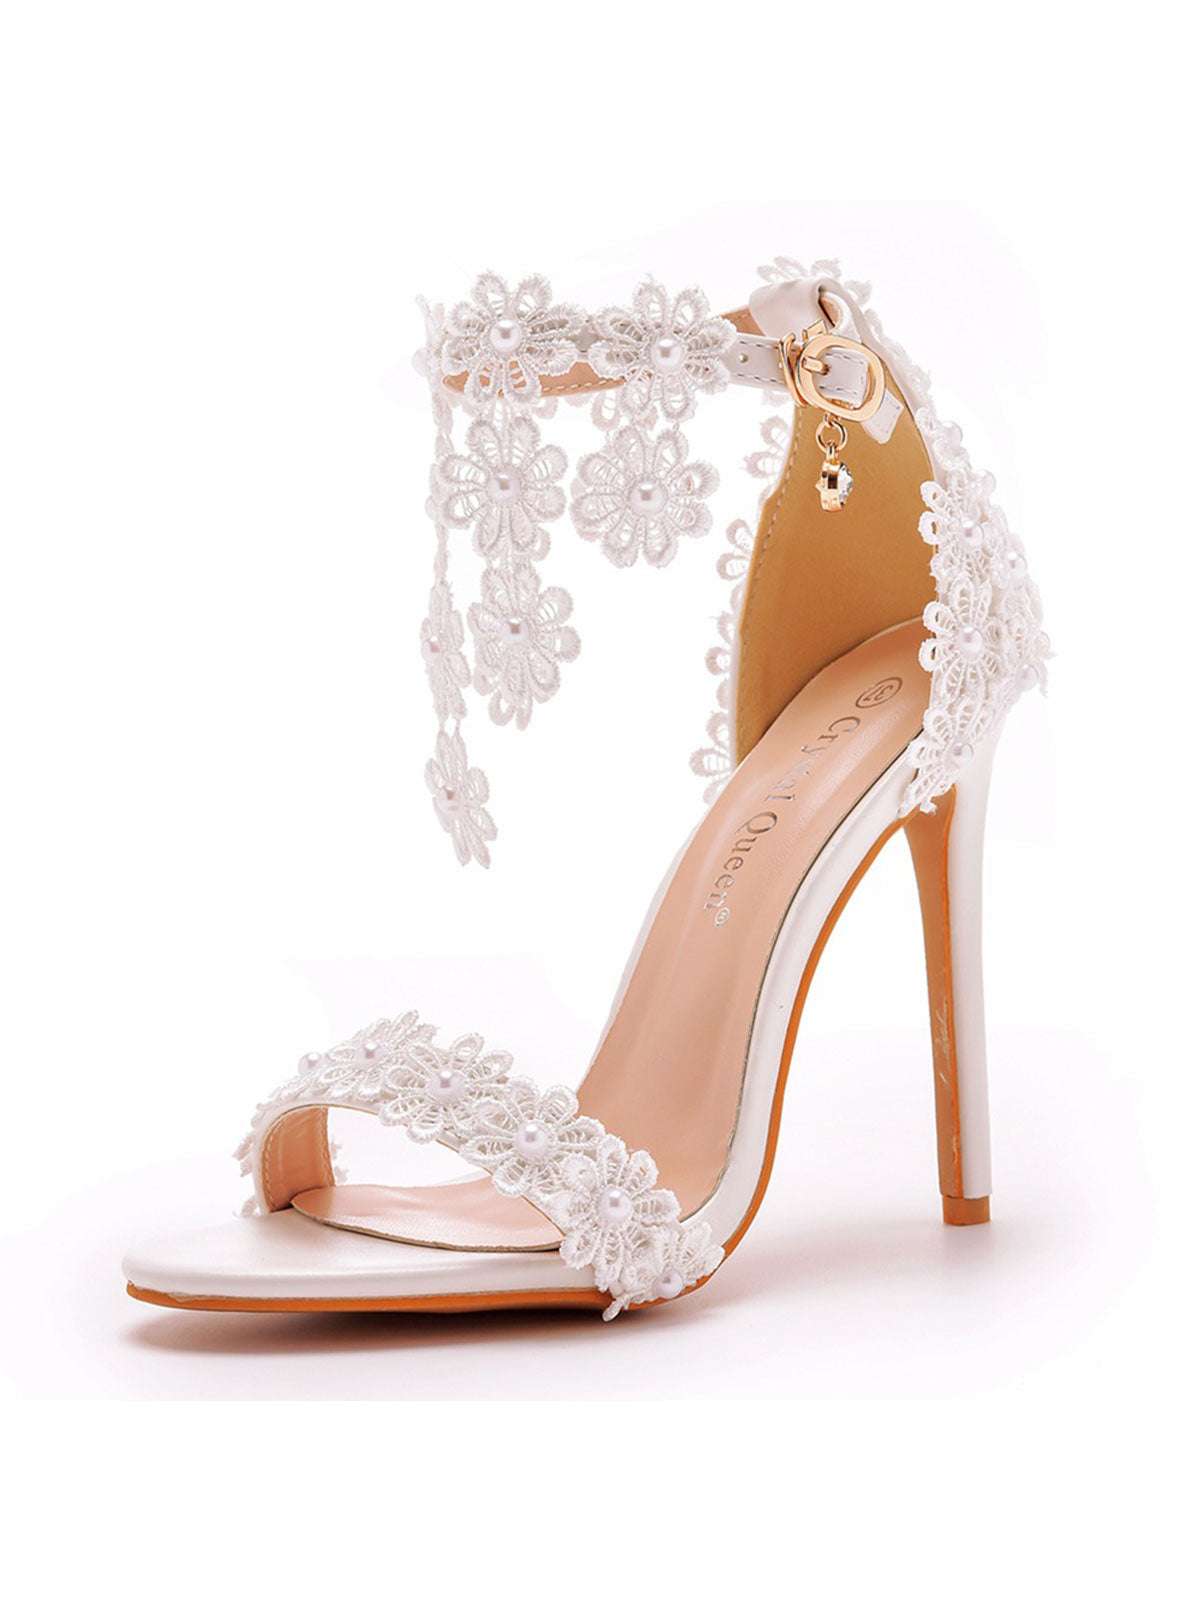 White Lace Flowers Tassels Open Toe Ankle-strap Ultra High Heels